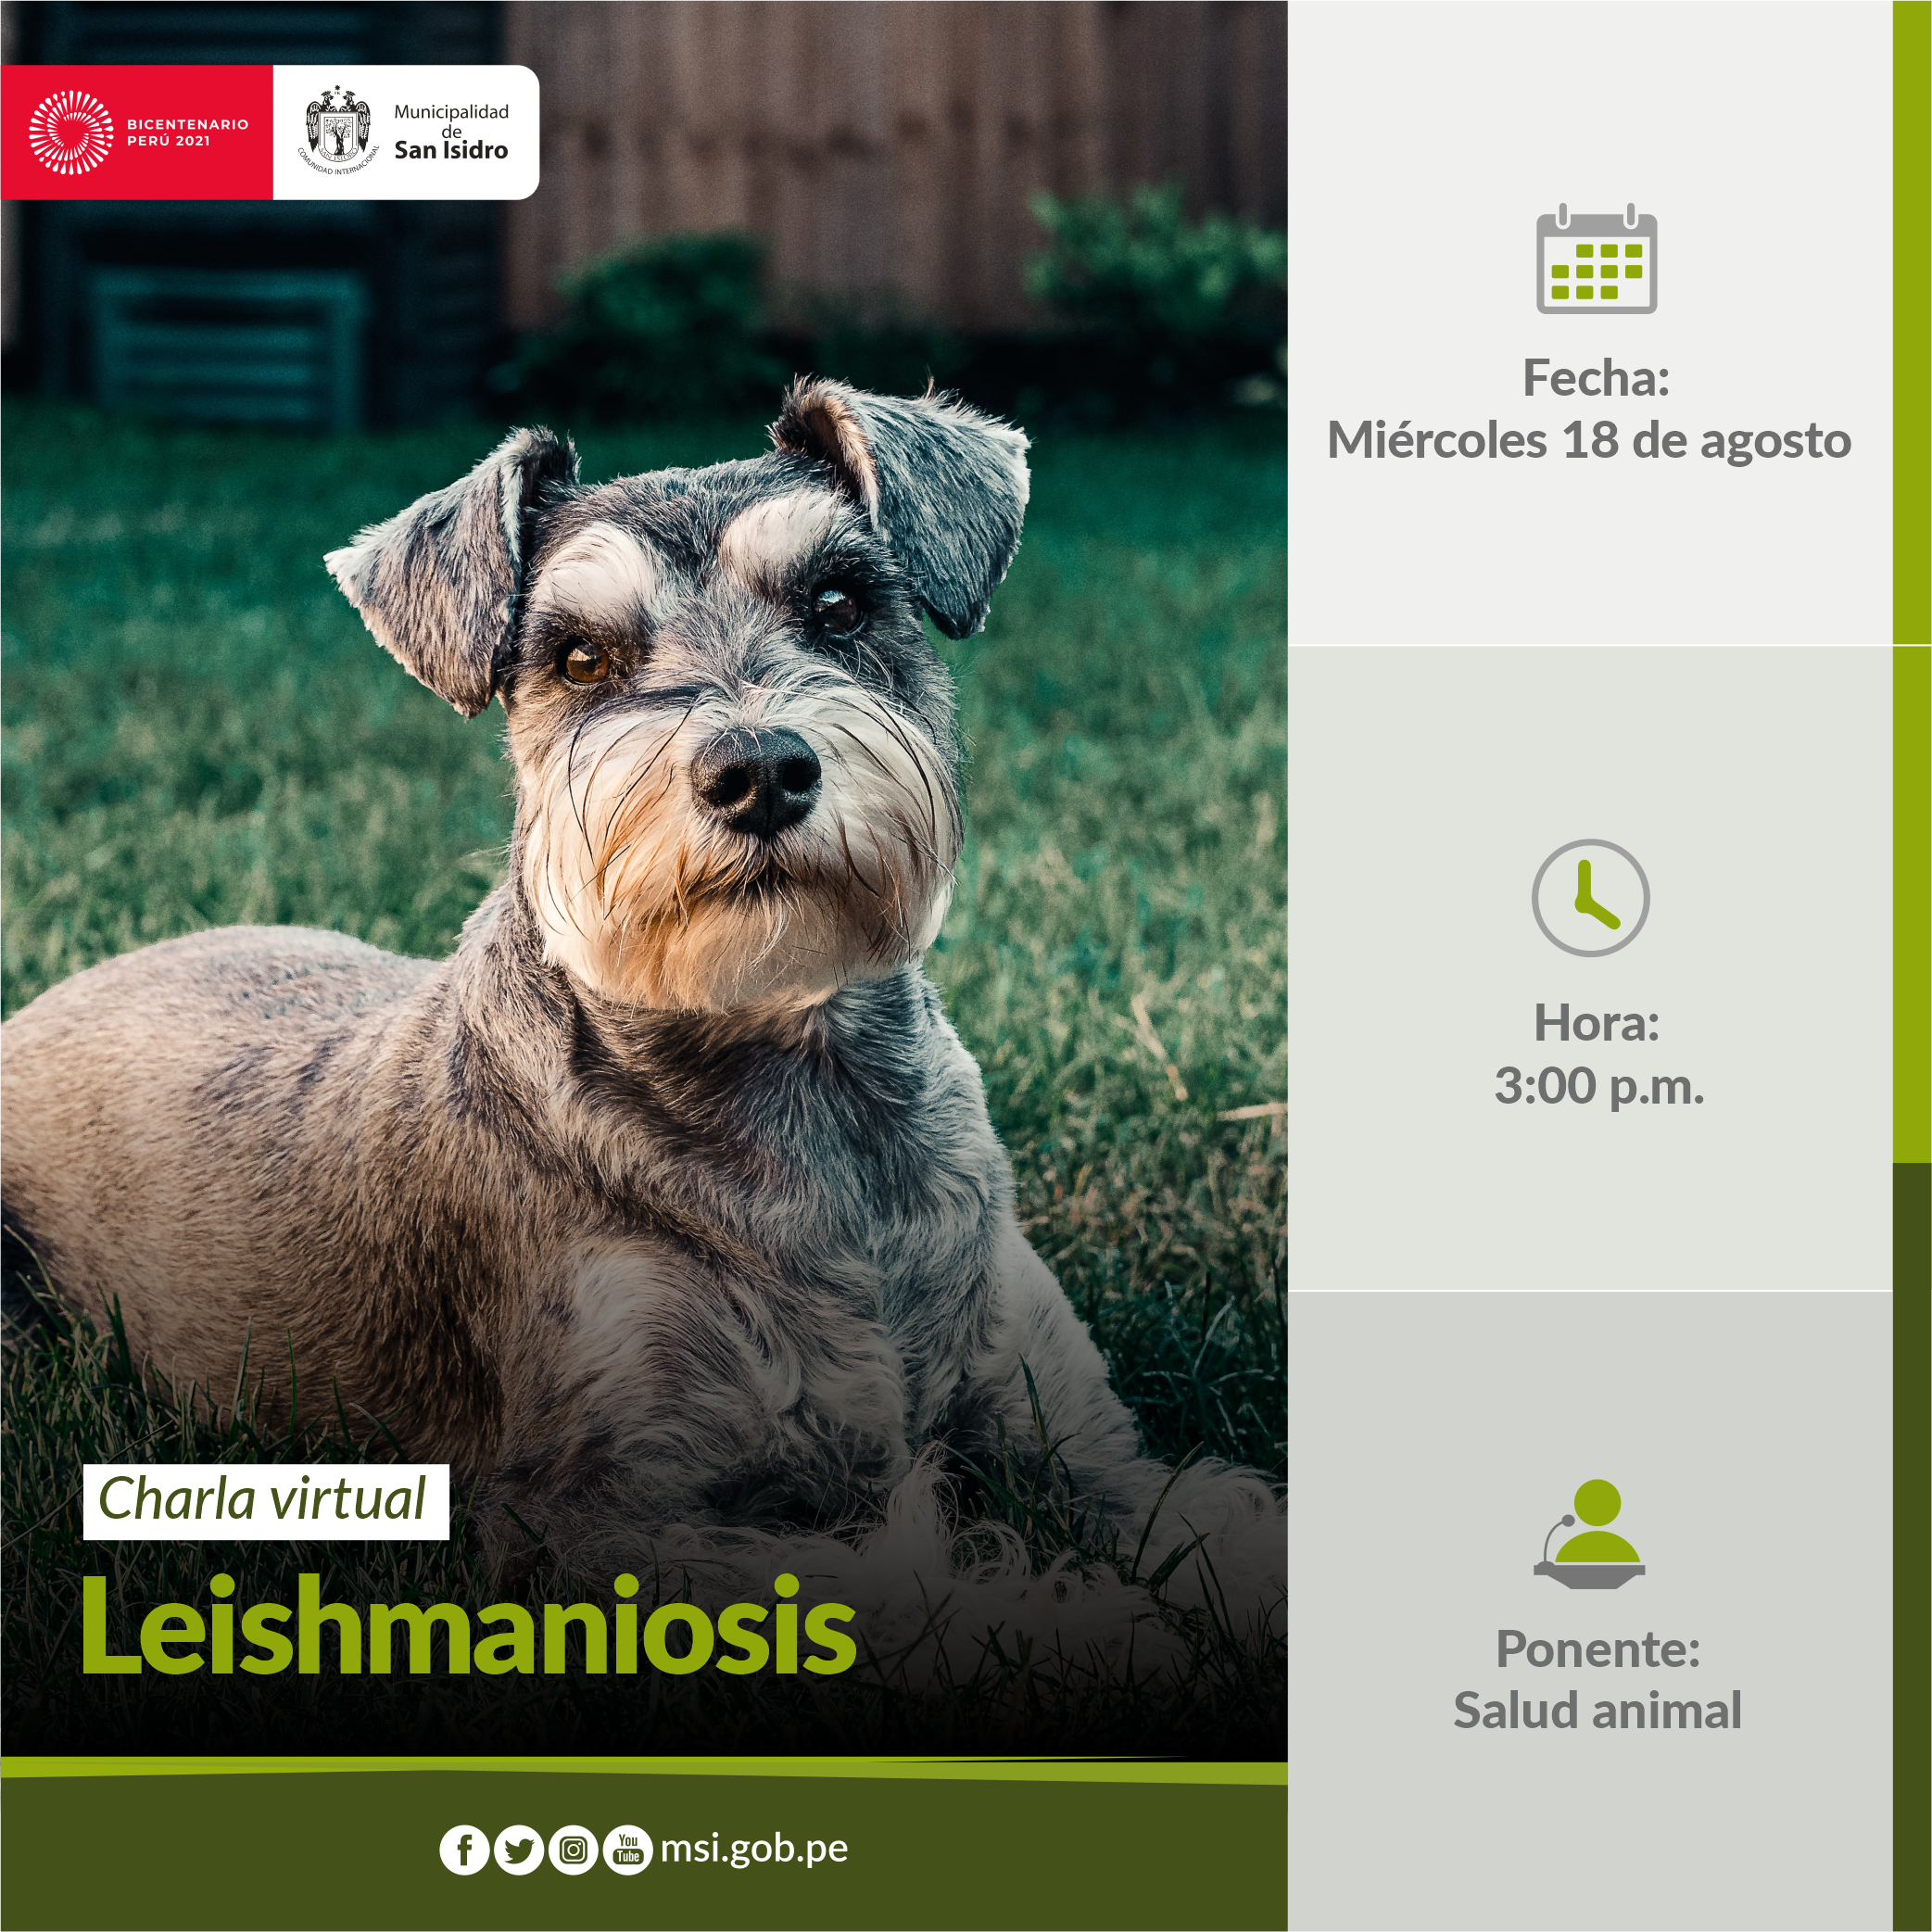 Leishmaniosis